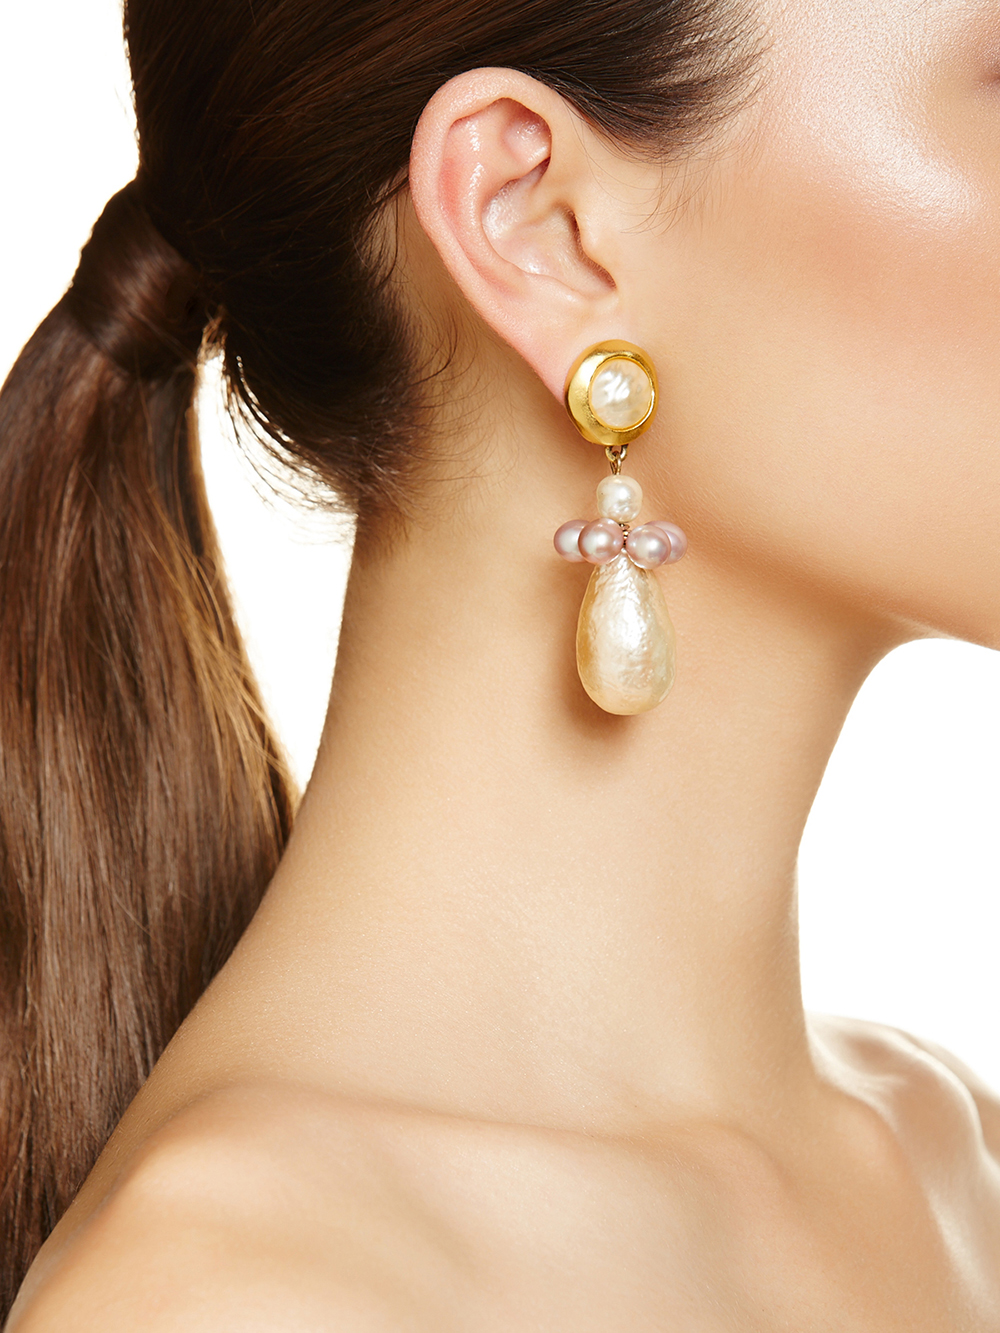 Penelope earrings, $359